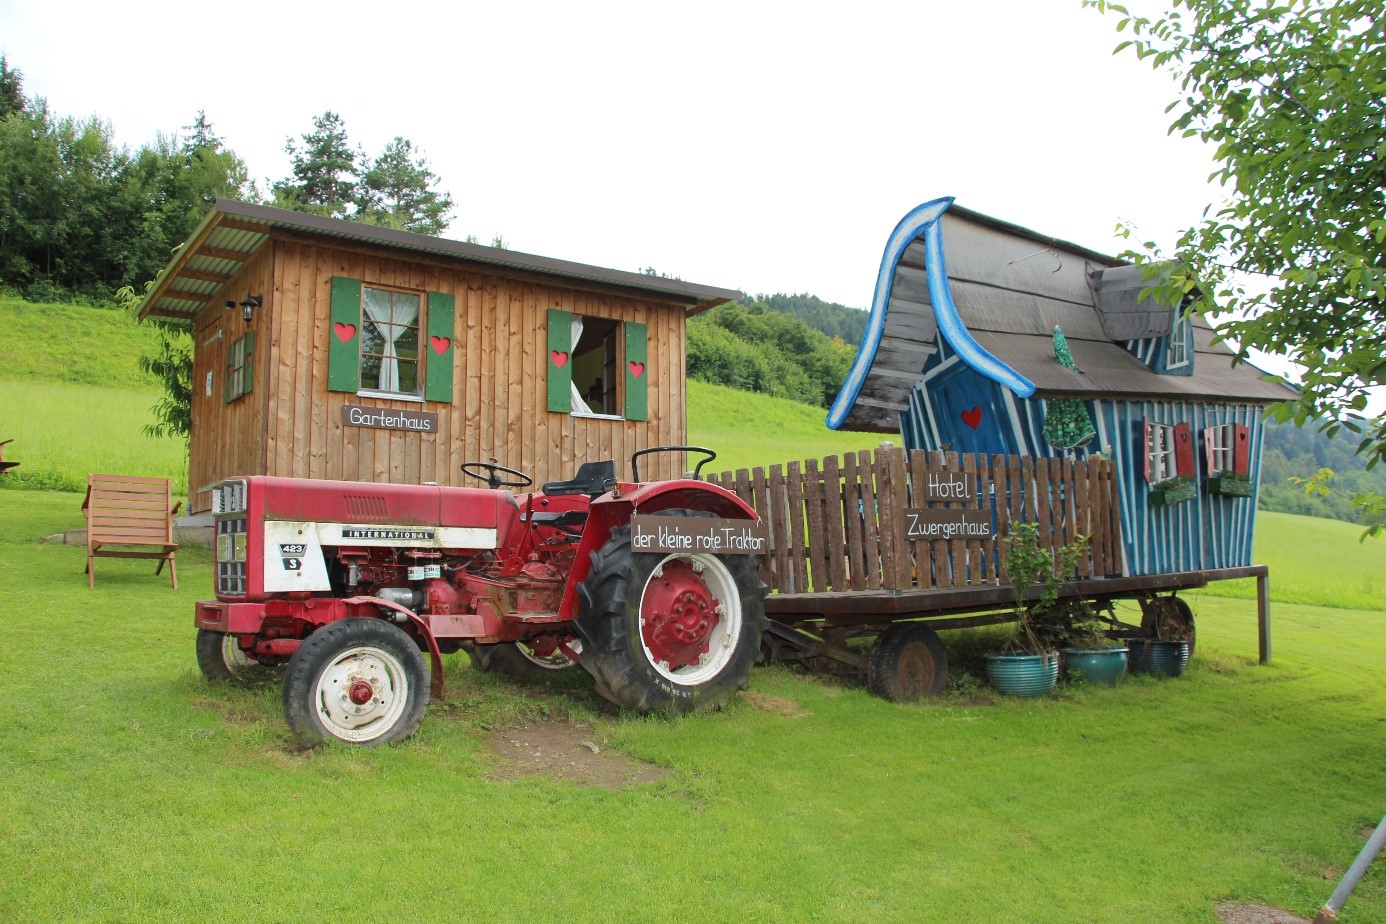 Ein Hotel-Häuschen mit einem Gartenhaus und einem roten Traktor.